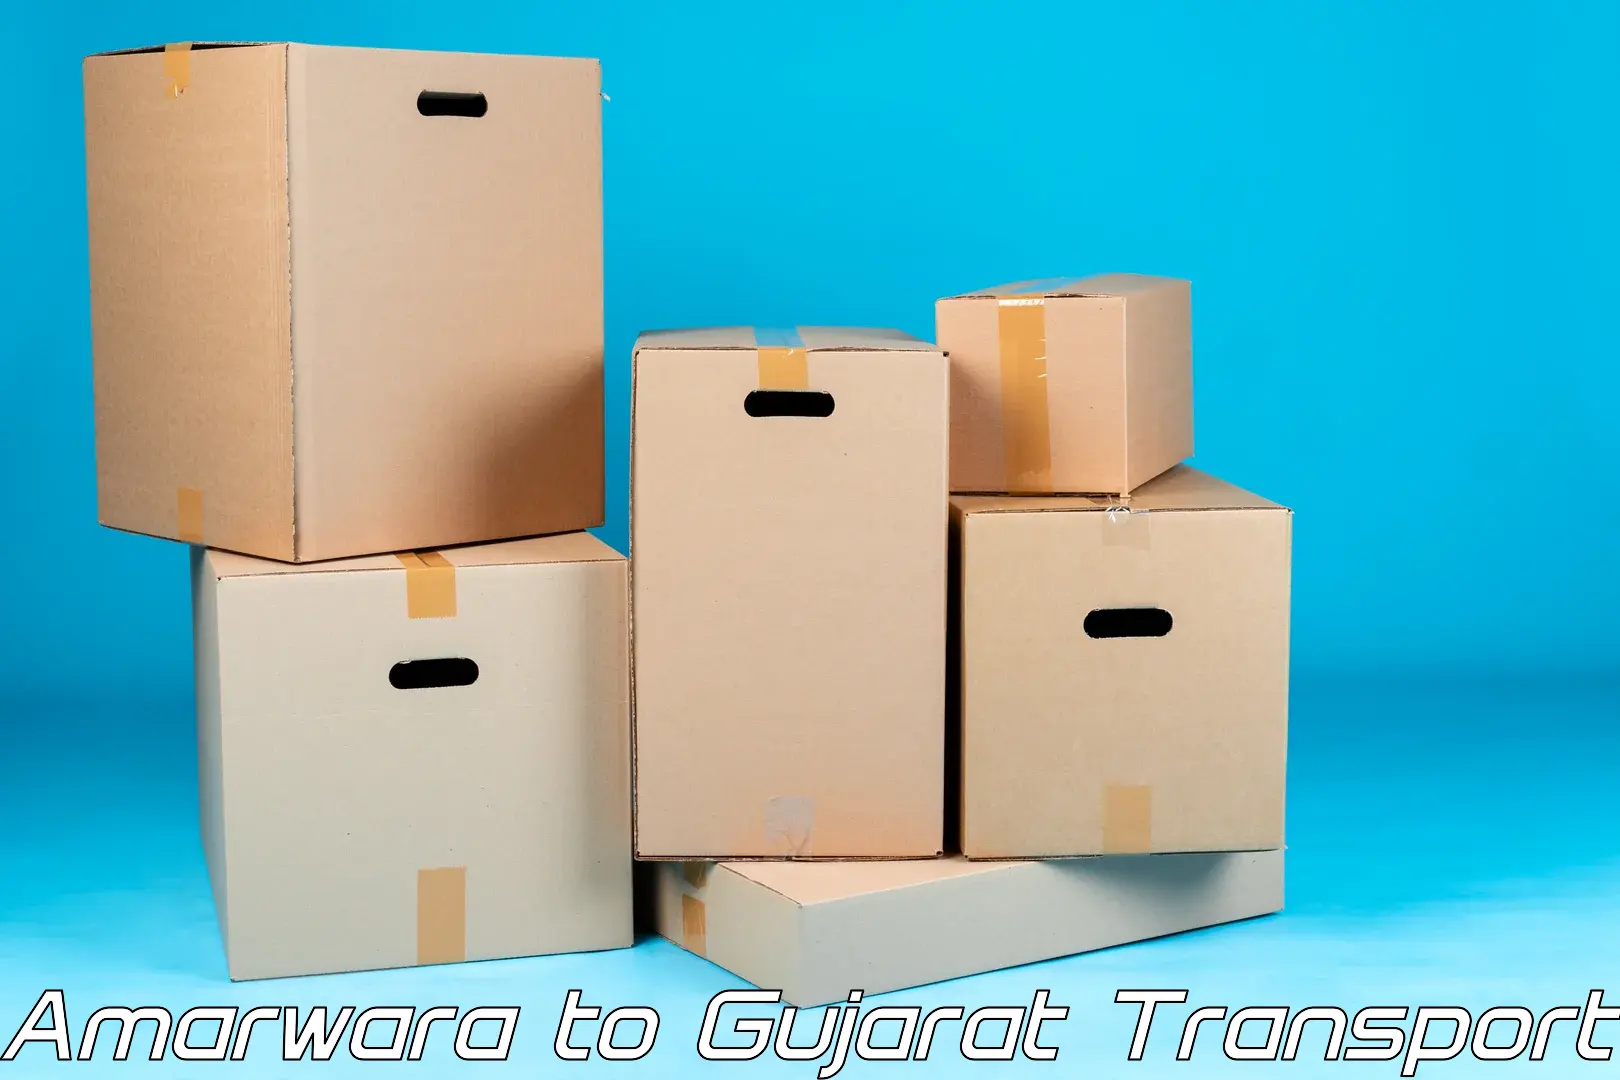 Cargo transport services Amarwara to Visavadar